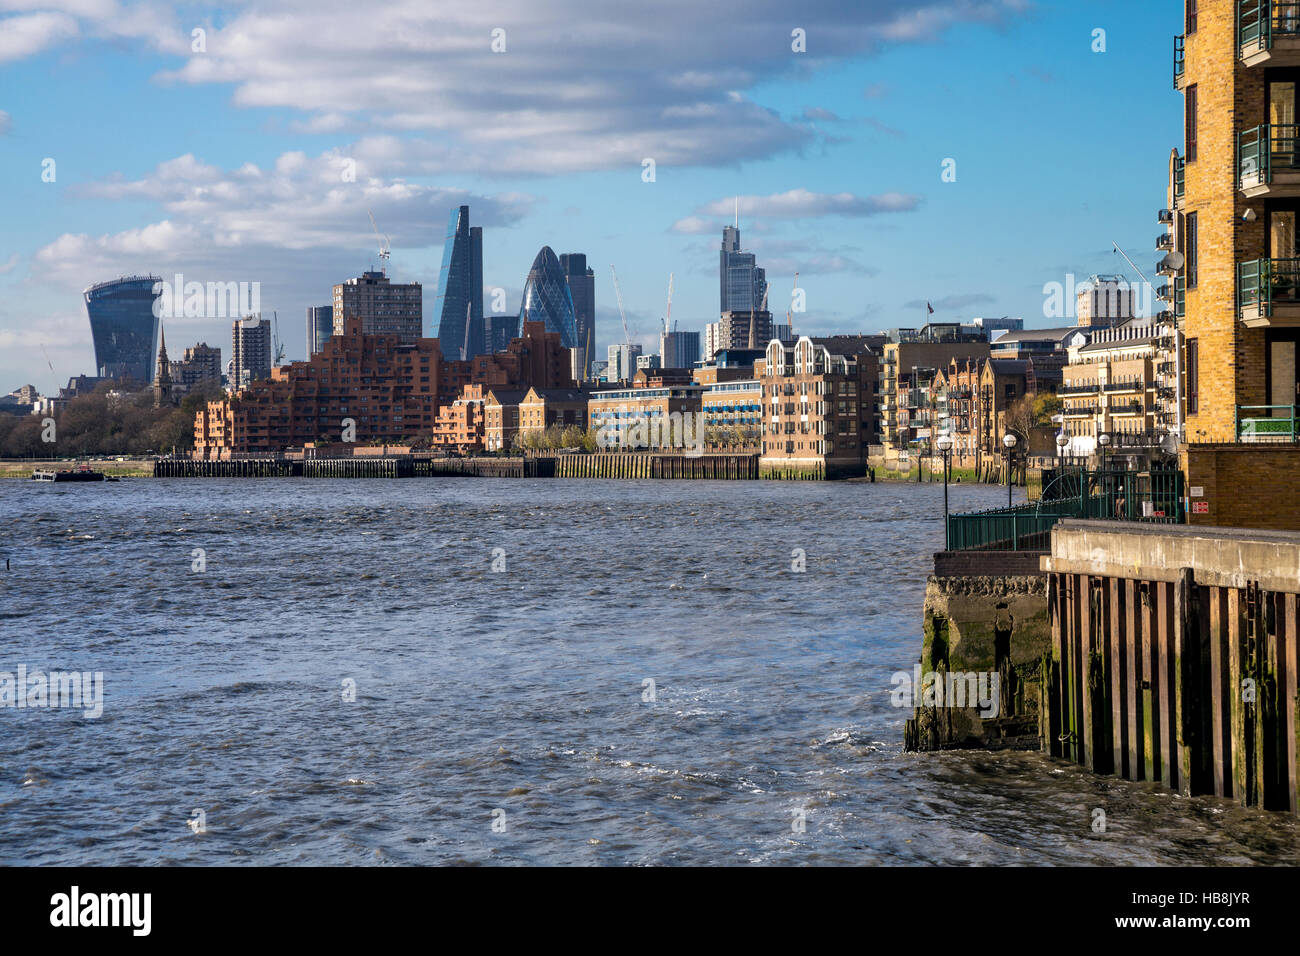 Ville de London (fragment, Walkie Talkie, cornichon) vue de Canary Wharf avec la Tamise au premier plan, London, UK Banque D'Images